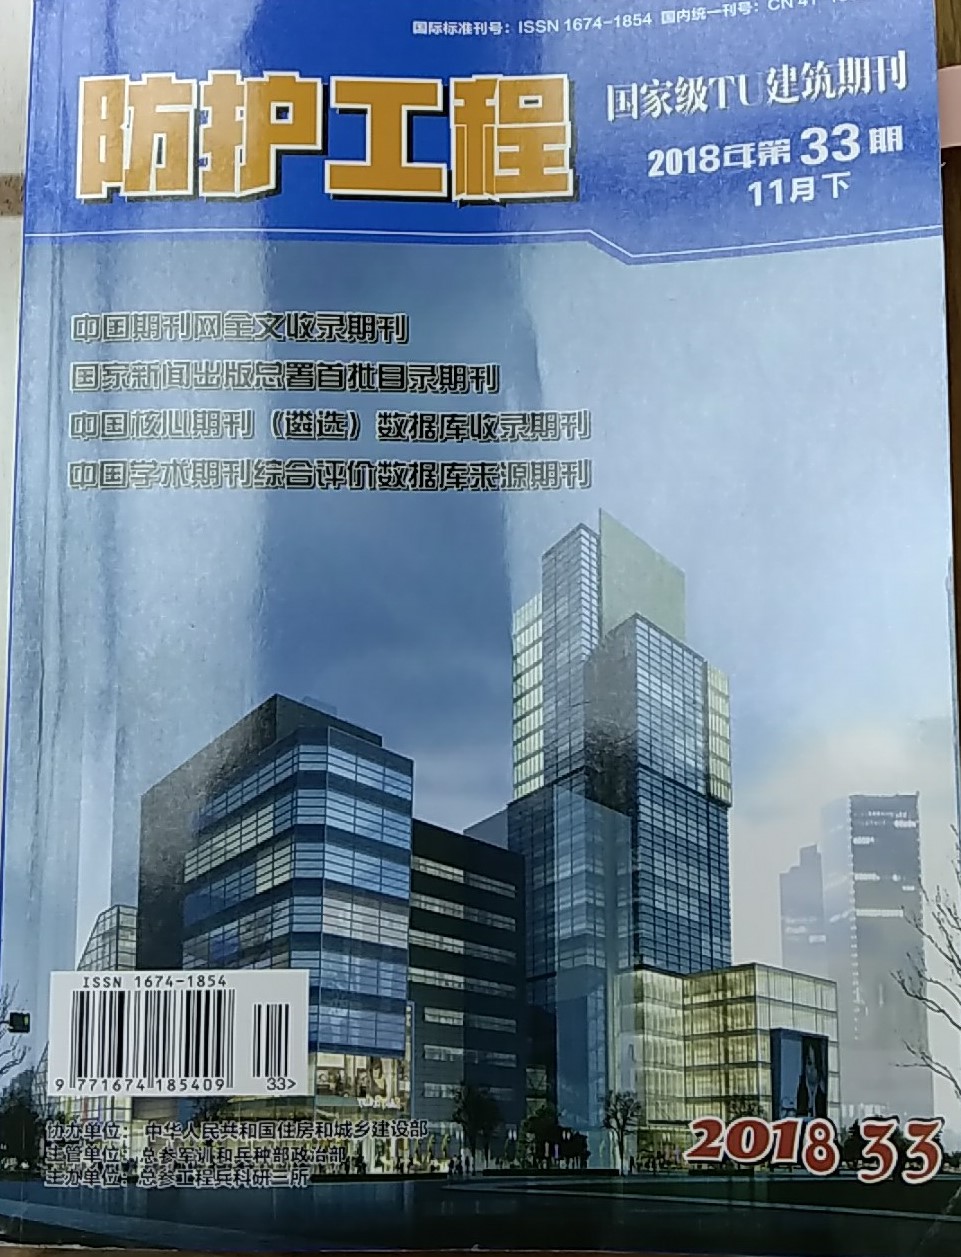 第33期《防护工程》杂志刊发嘉辉科技总经理王敬忠发表的文章《建筑智能化中BIM技术应用的途径分析》